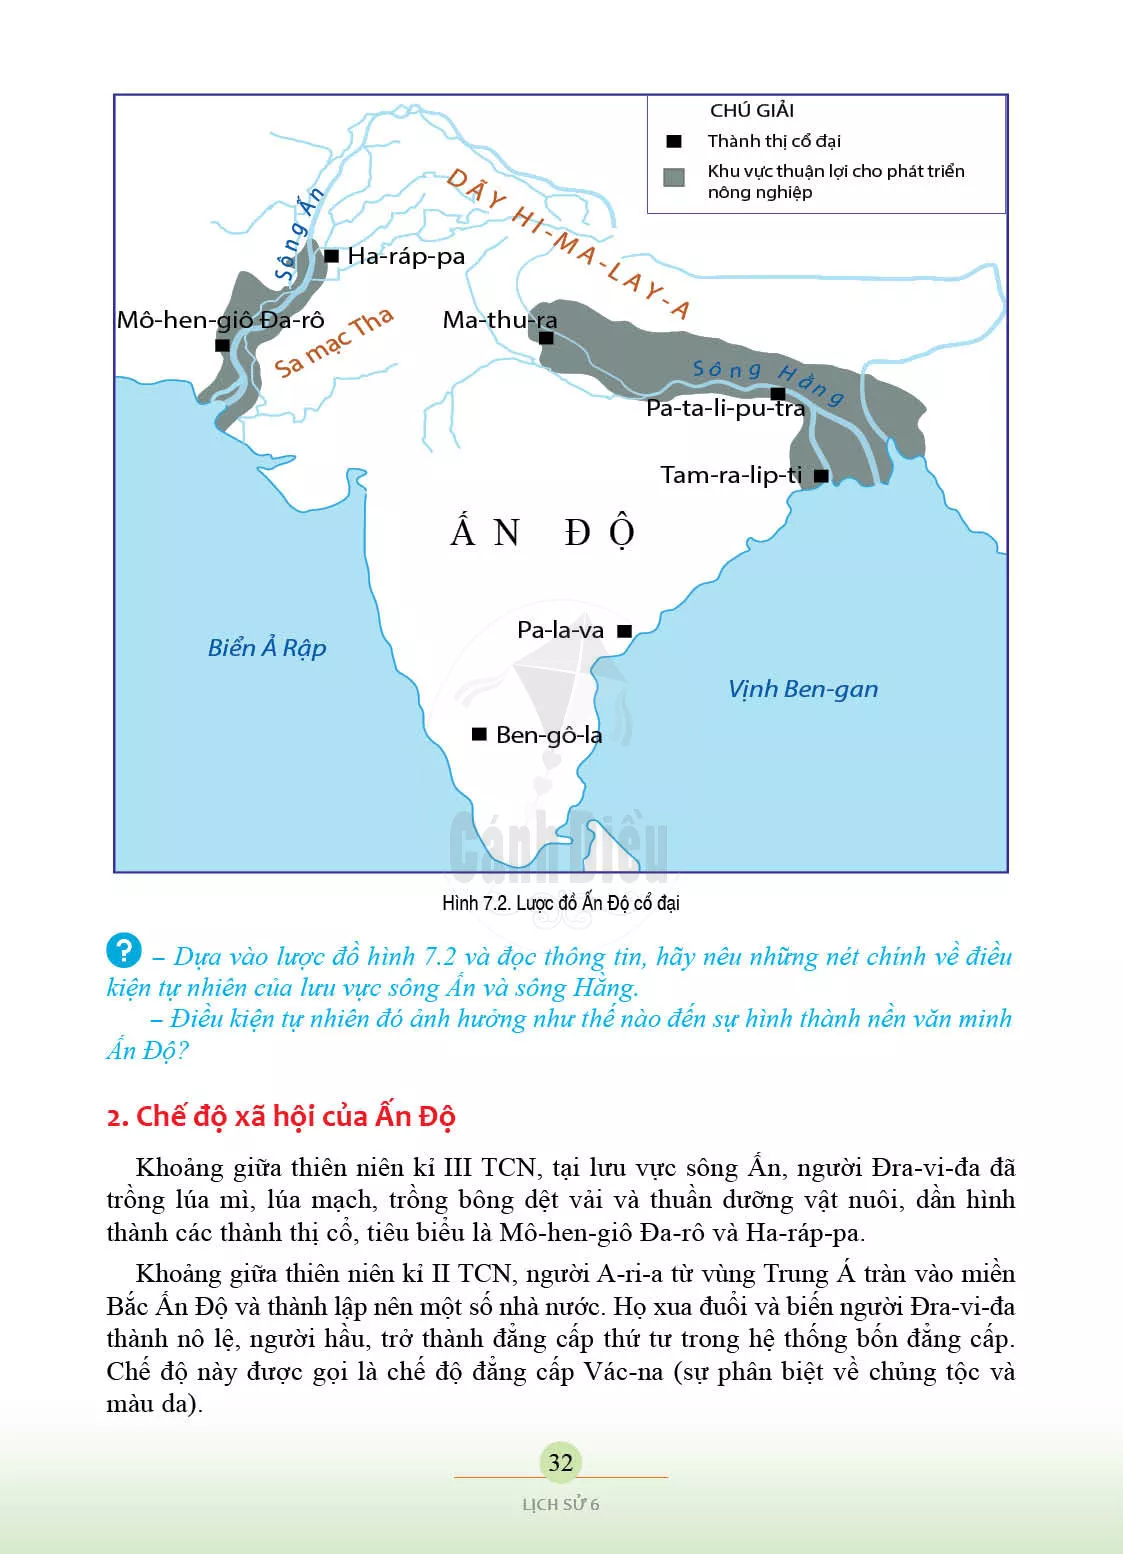 Bản đồ Ấn Độ cổ đại: Khám phá bản đồ Ấn Độ cổ đại và tìm hiểu về lịch sử đất nước xa xưa. Những chi tiết đầy bí ẩn trên bản đồ sẽ khiến bạn ngạc nhiên và thích thú.